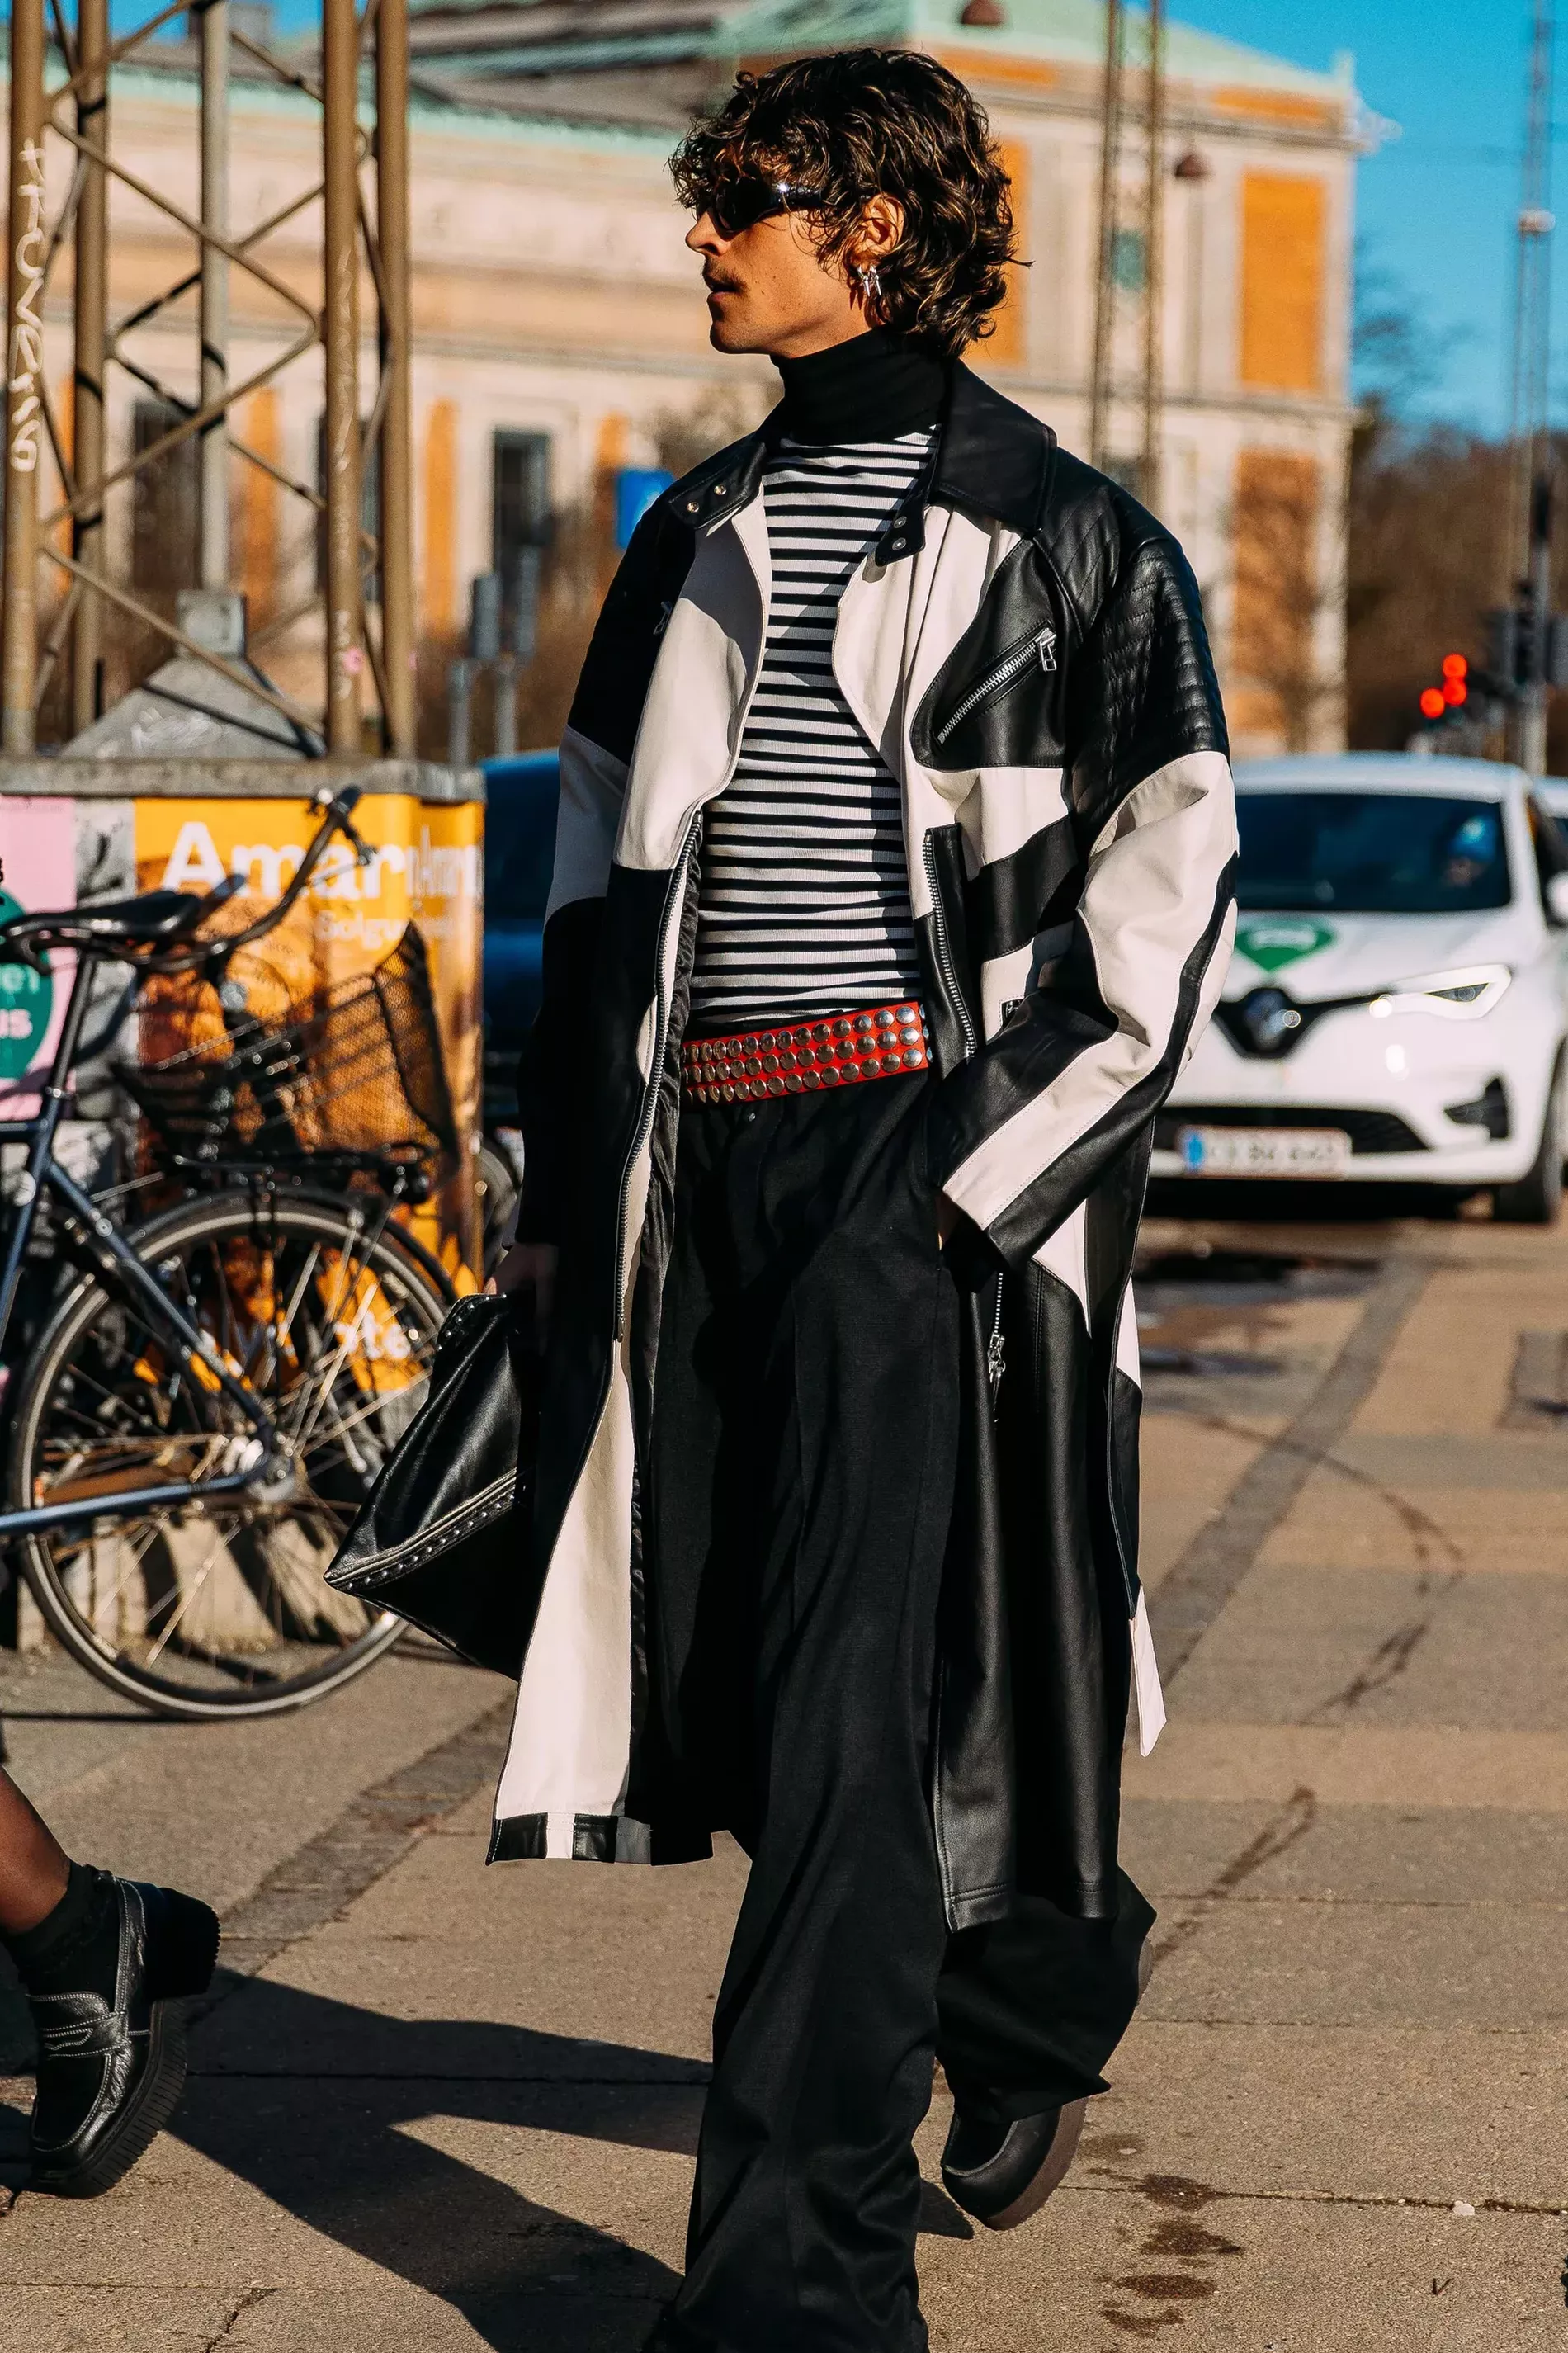 Copenhagen fashion week guest wears striped turtleneck under leather coat 